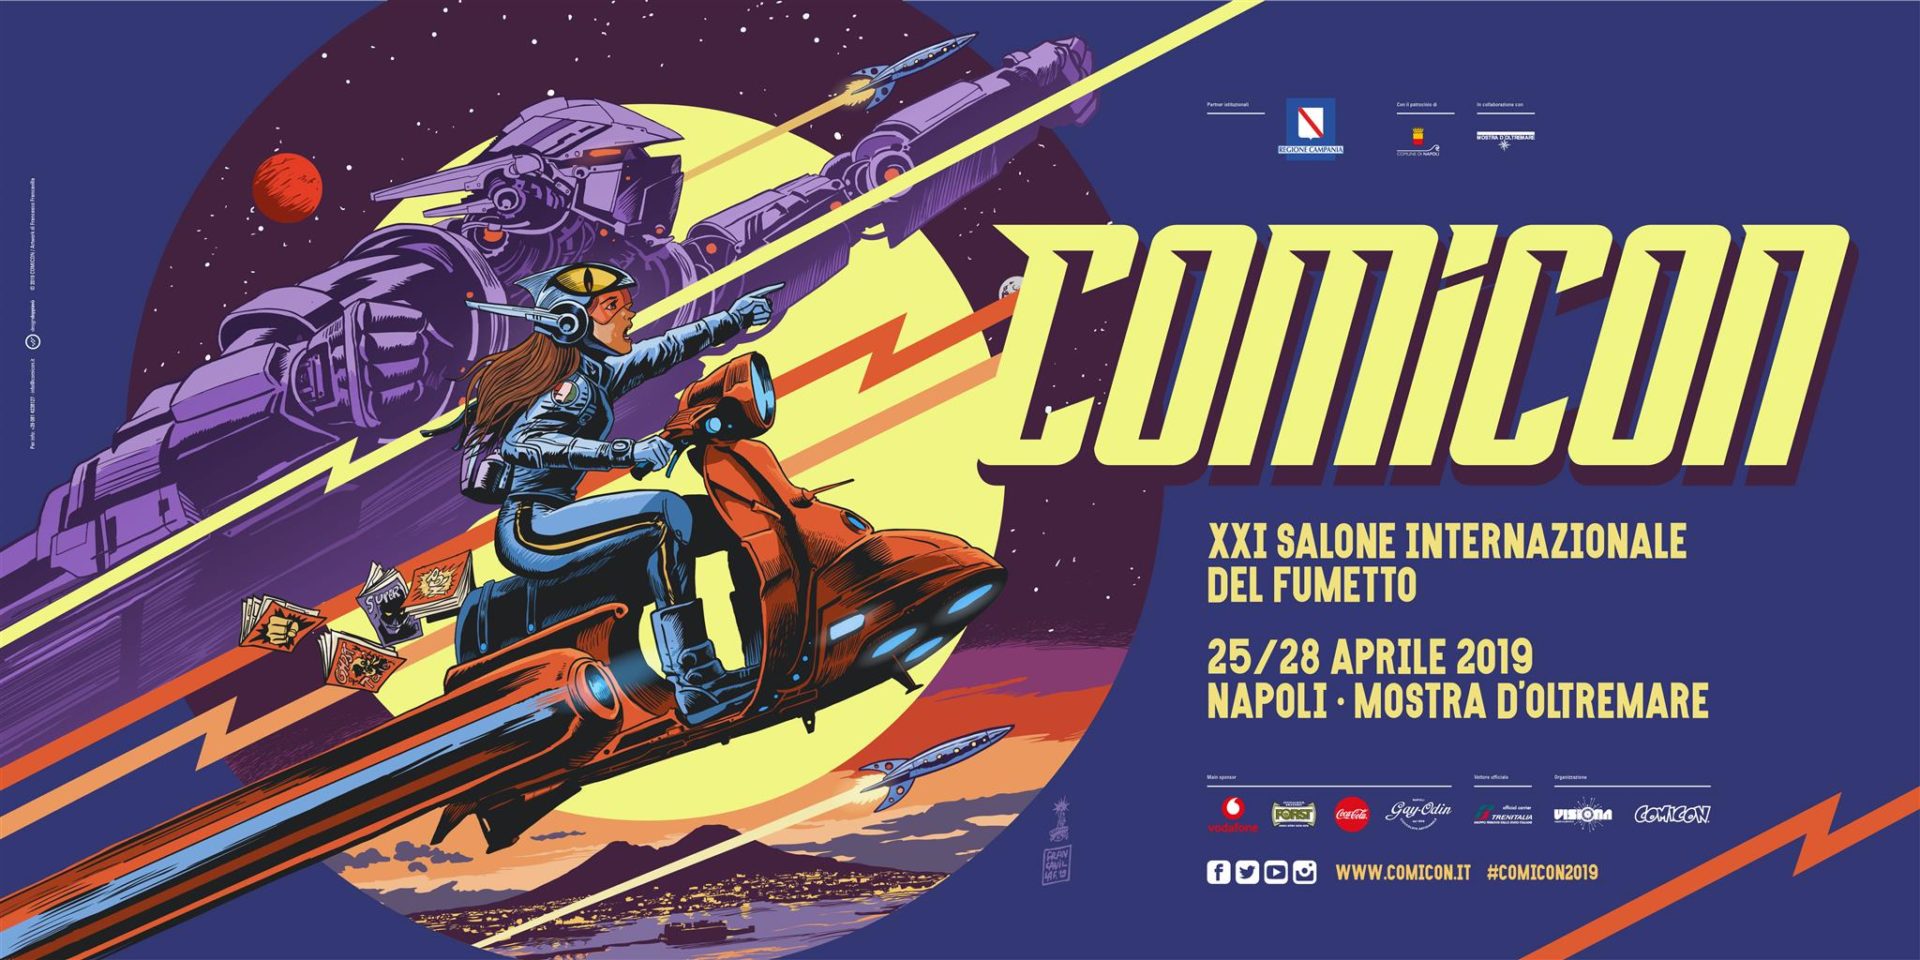 Comicon 2019, il Festival del fumetto da domani a Napoli. Il programma completo